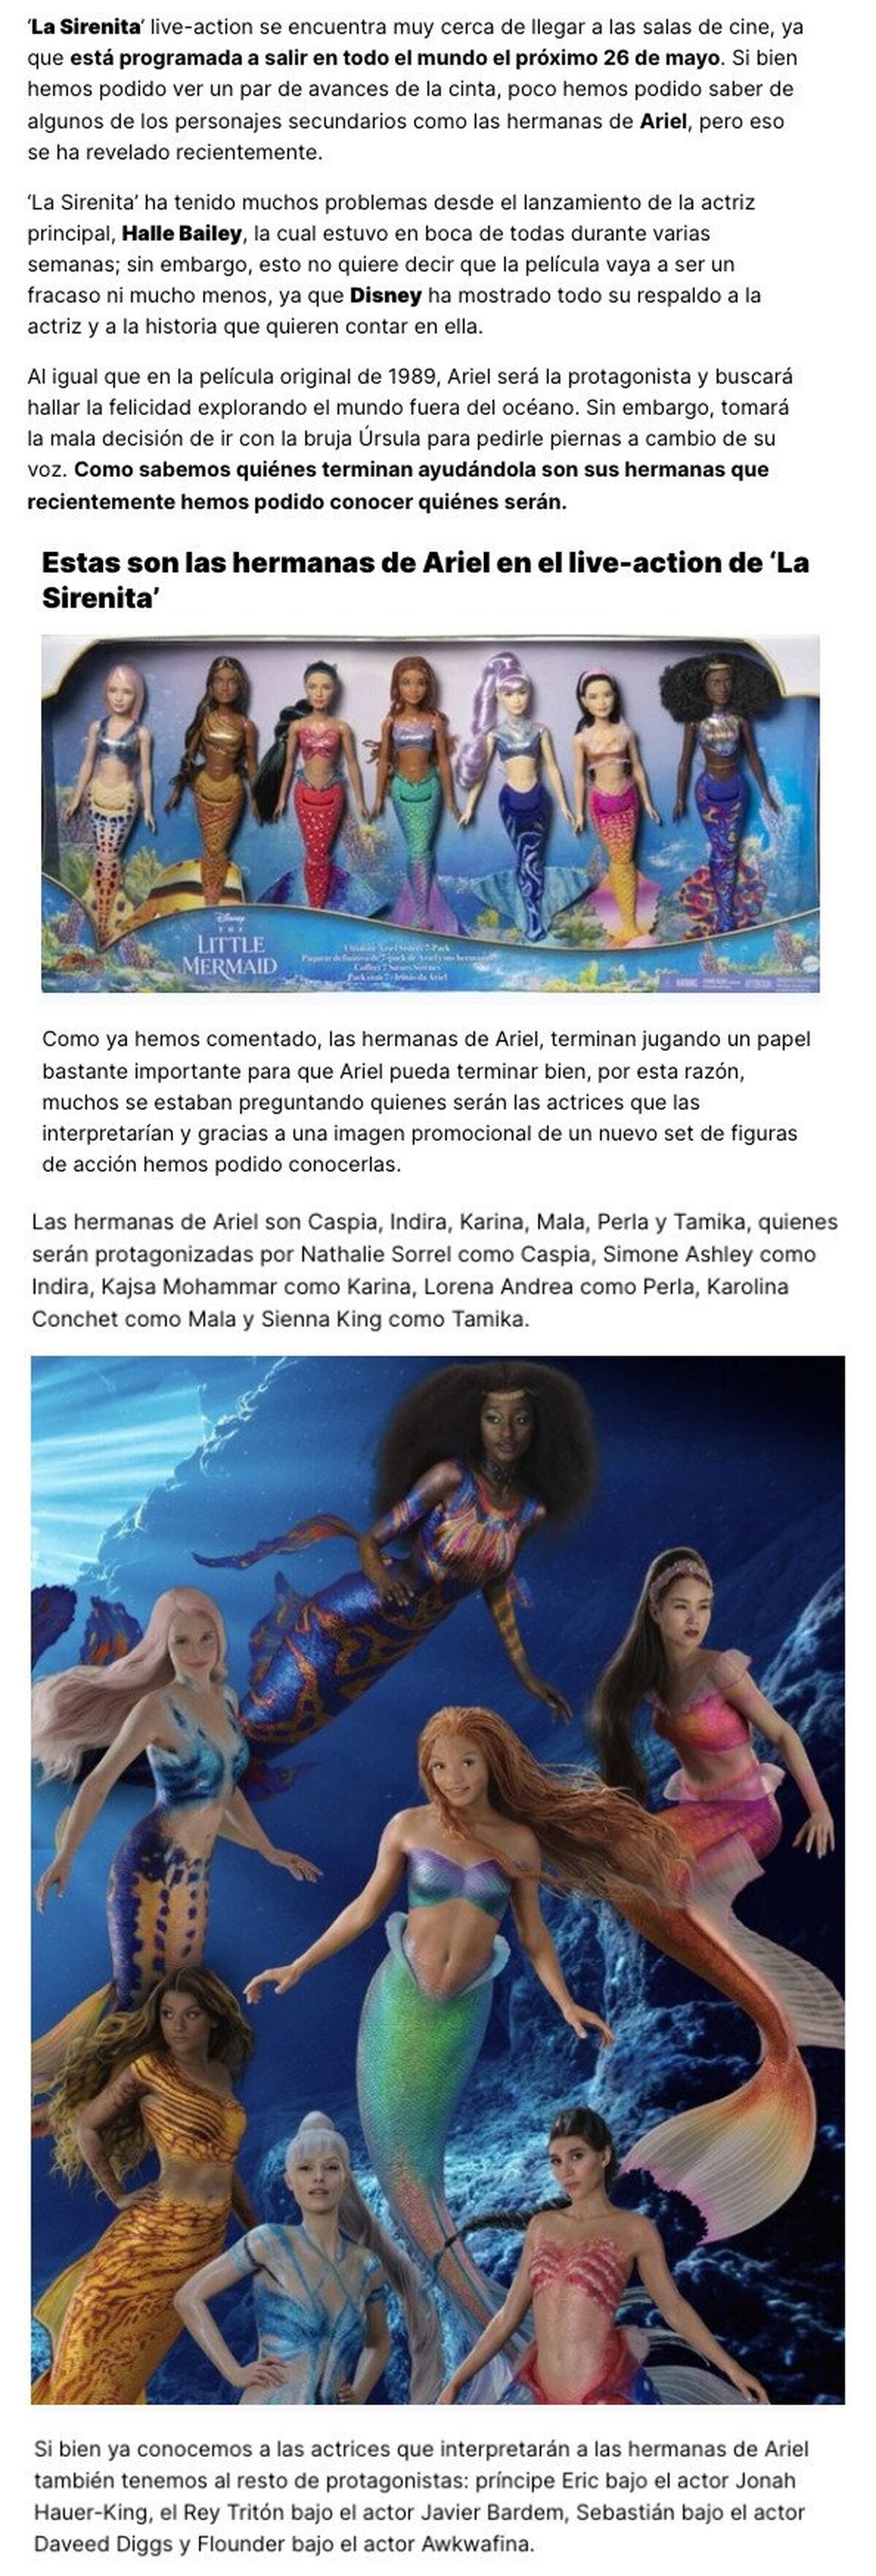 GALERÍA: ¿Conoces a las hermanas de Ariel en el live-action de ‘La Sirenita’?